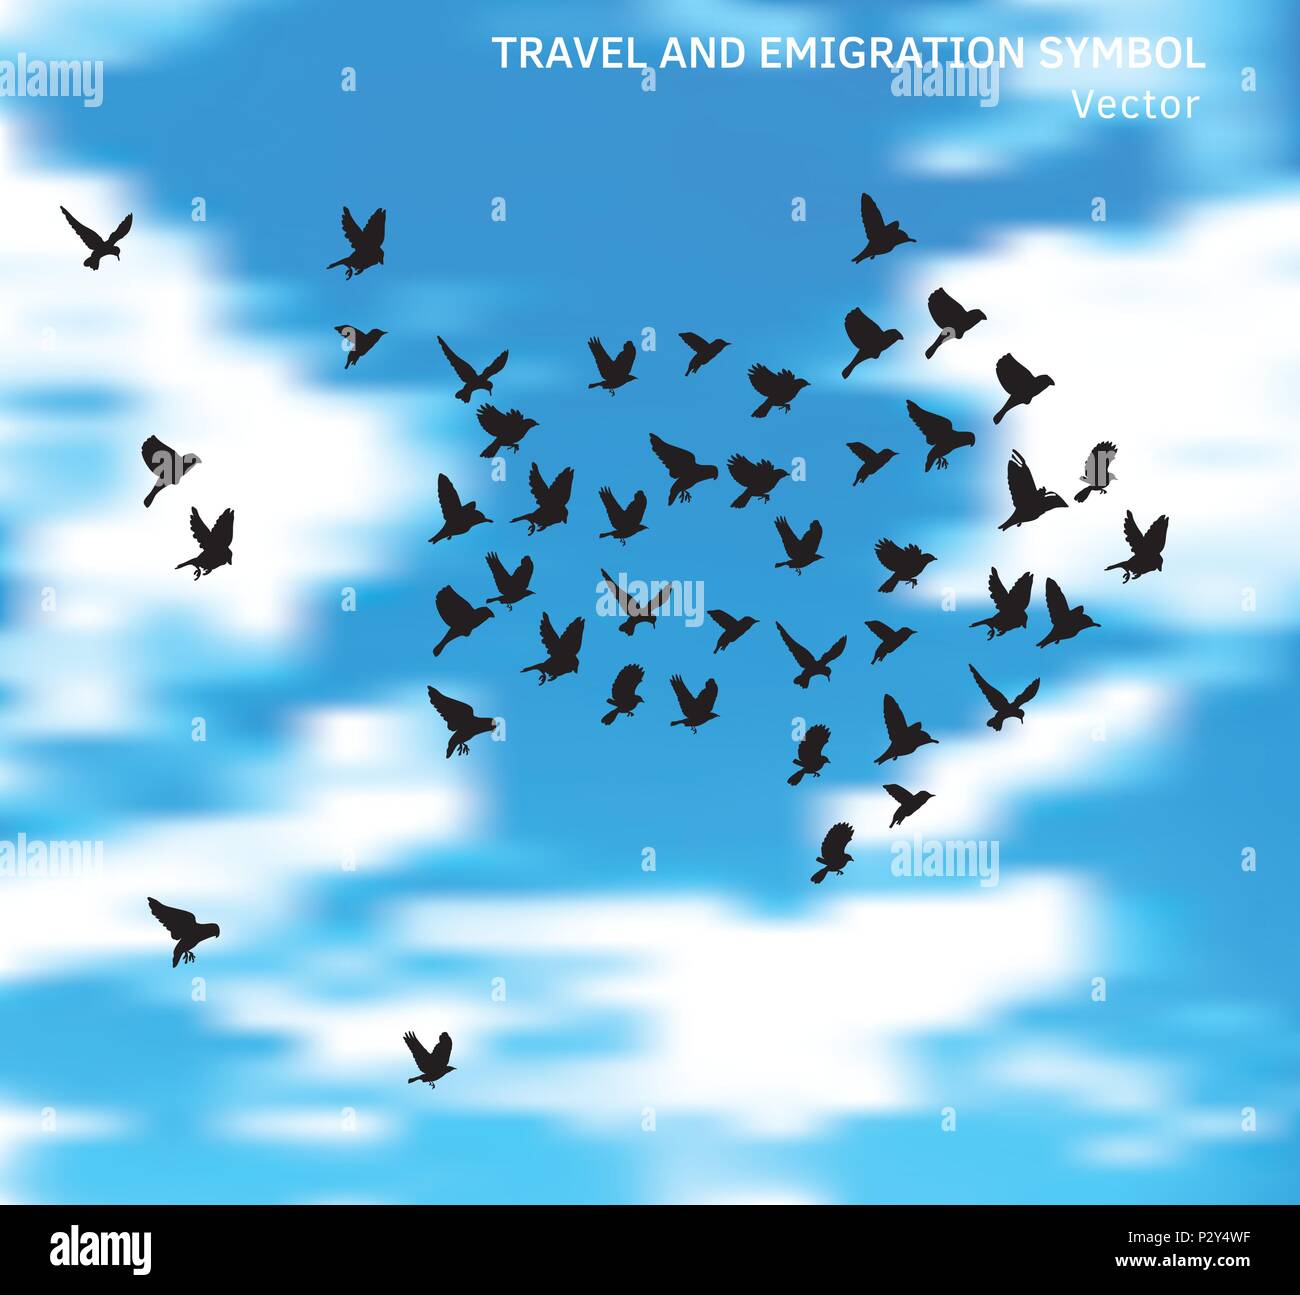 Viaggi e emigrazione simbolo degli uccelli in blu le nuvole del cielo. Illustrazione Vettoriale